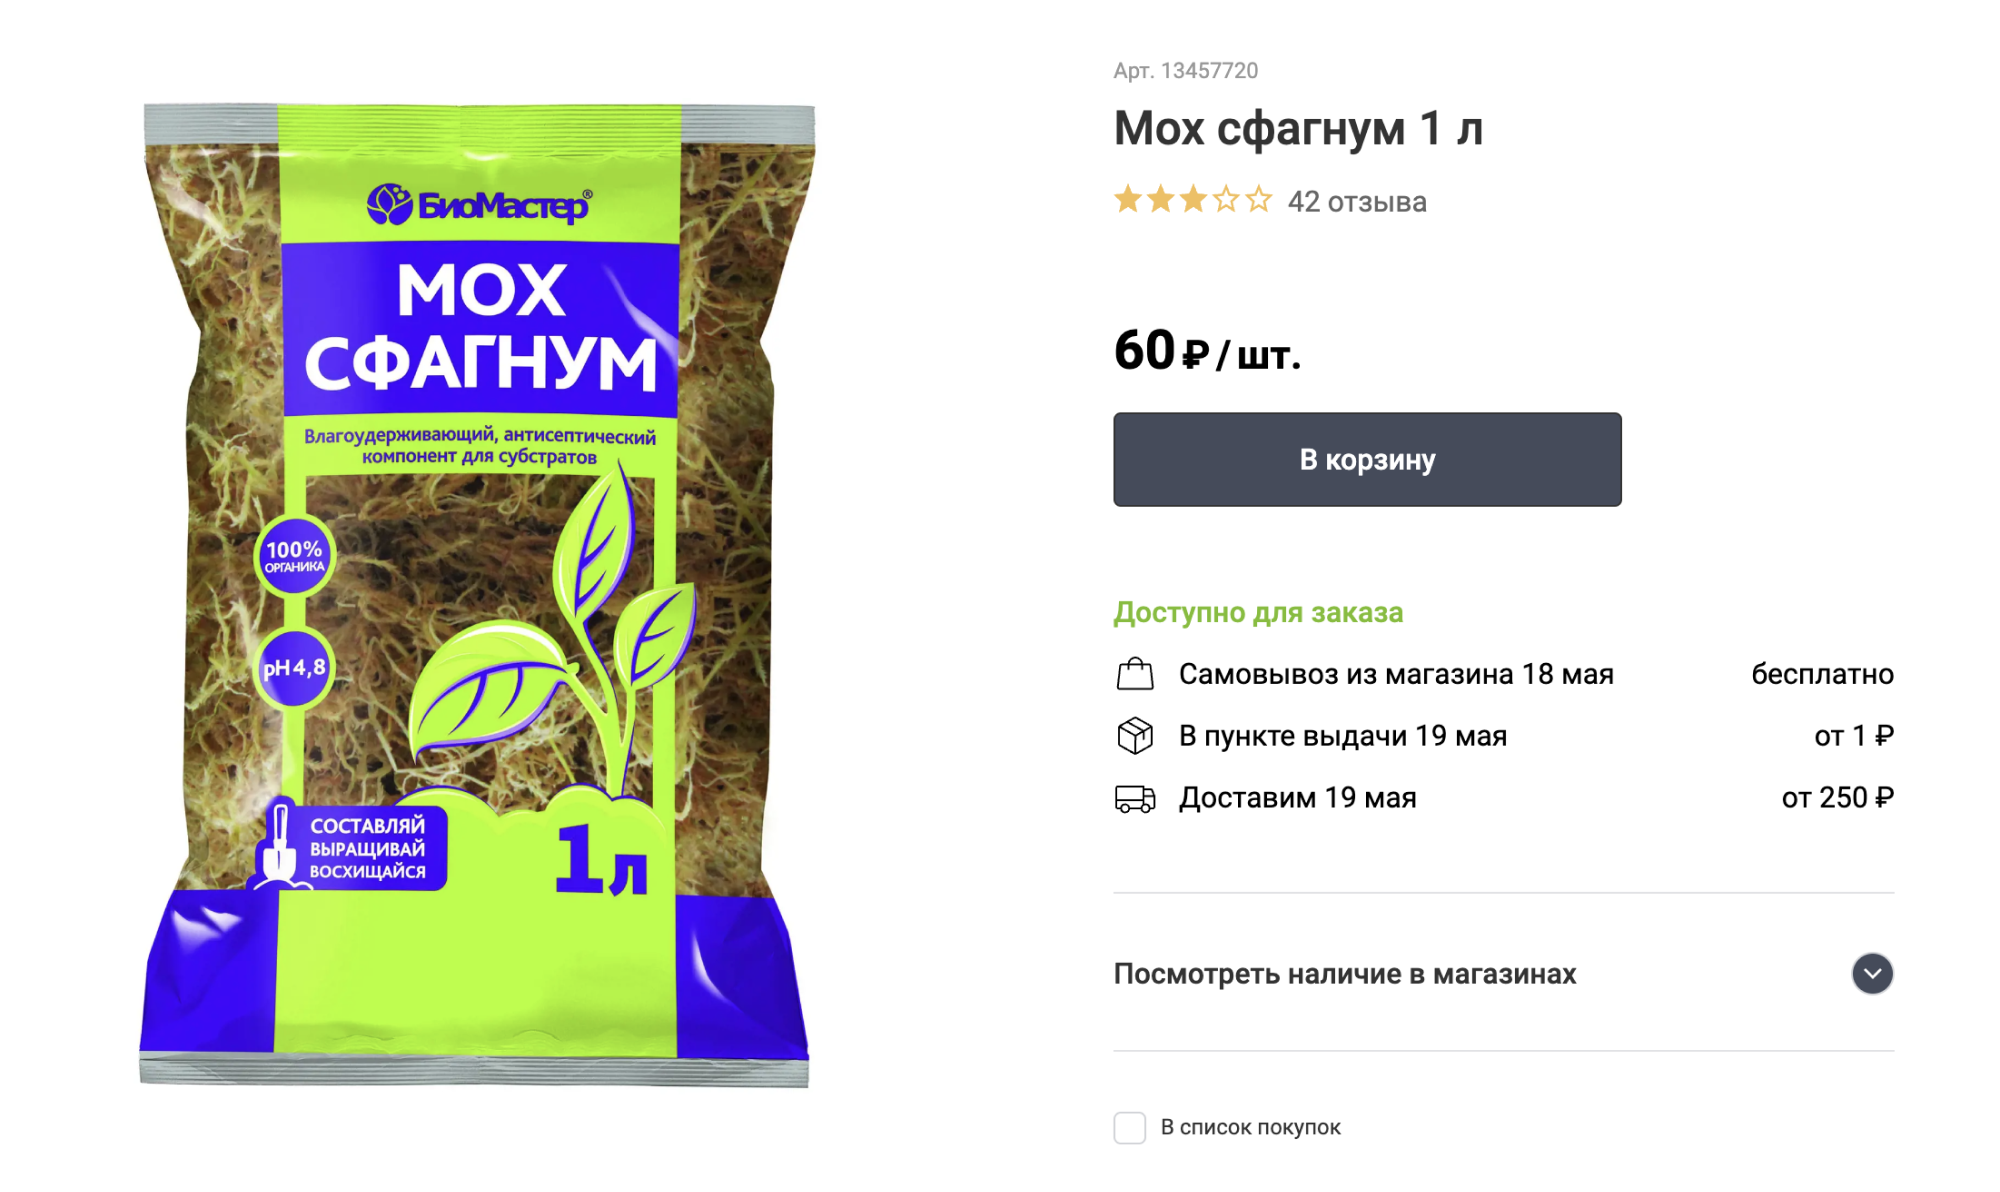 Мох сфагнум задерживает влагу, но при этом она не закисает. Цена пакета — 60 ₽. Источник: leroymerlin.ru